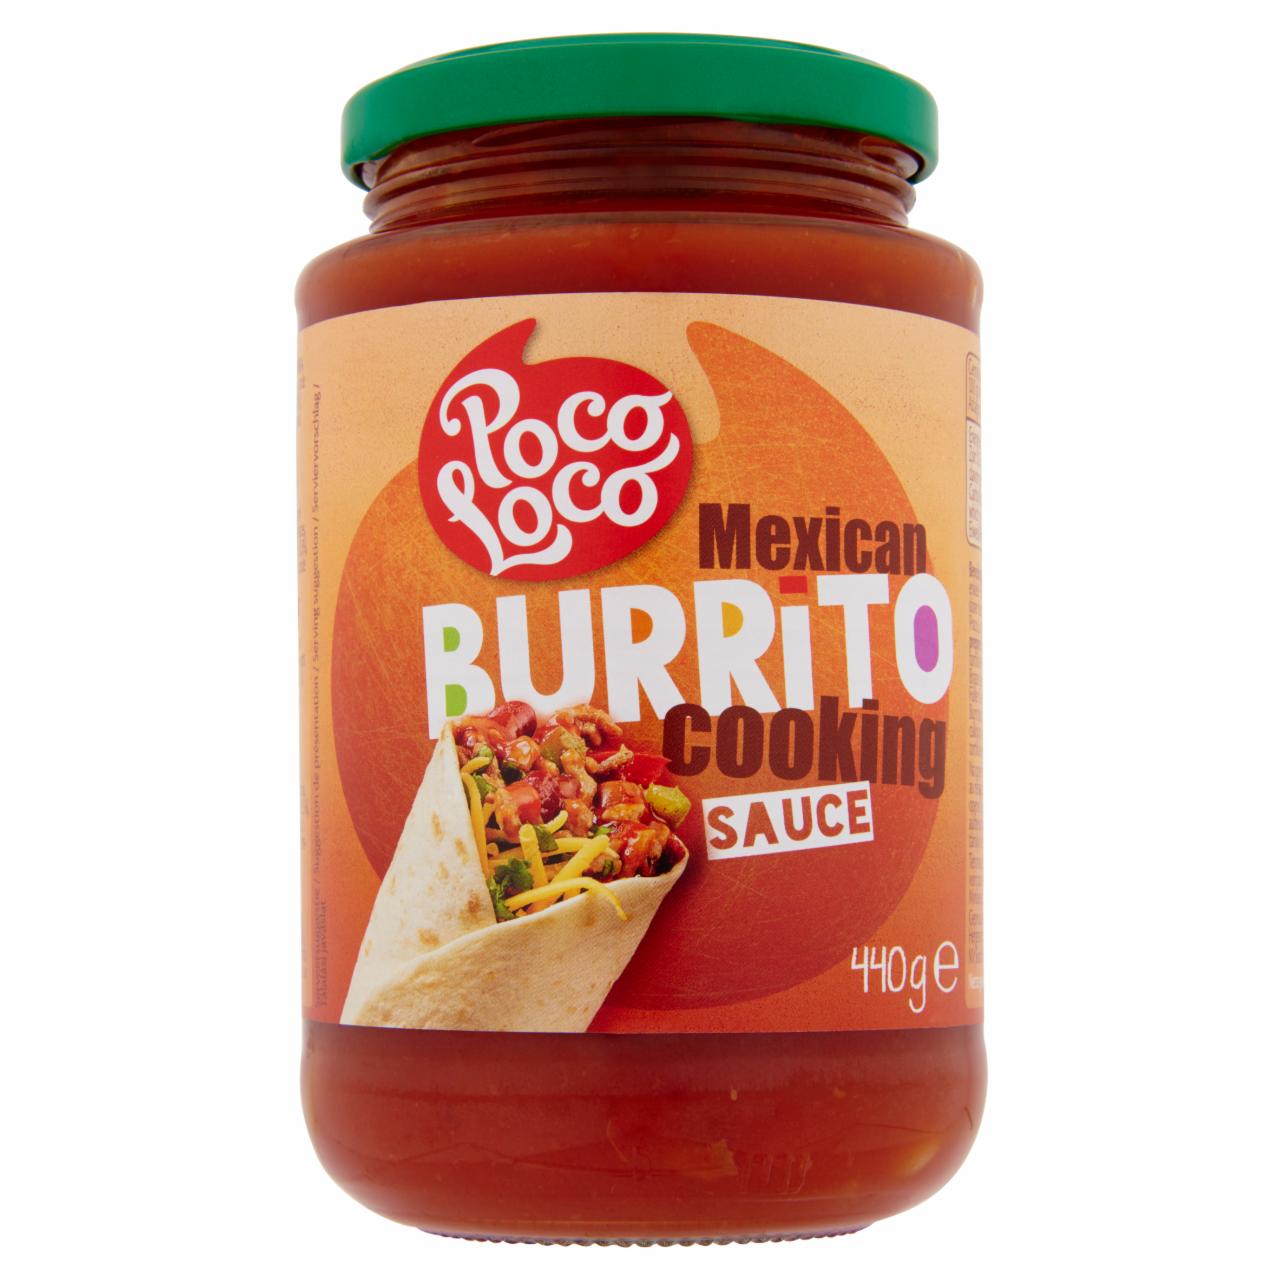 Képek - Poco Loco Burrito főzőszósz 440 g